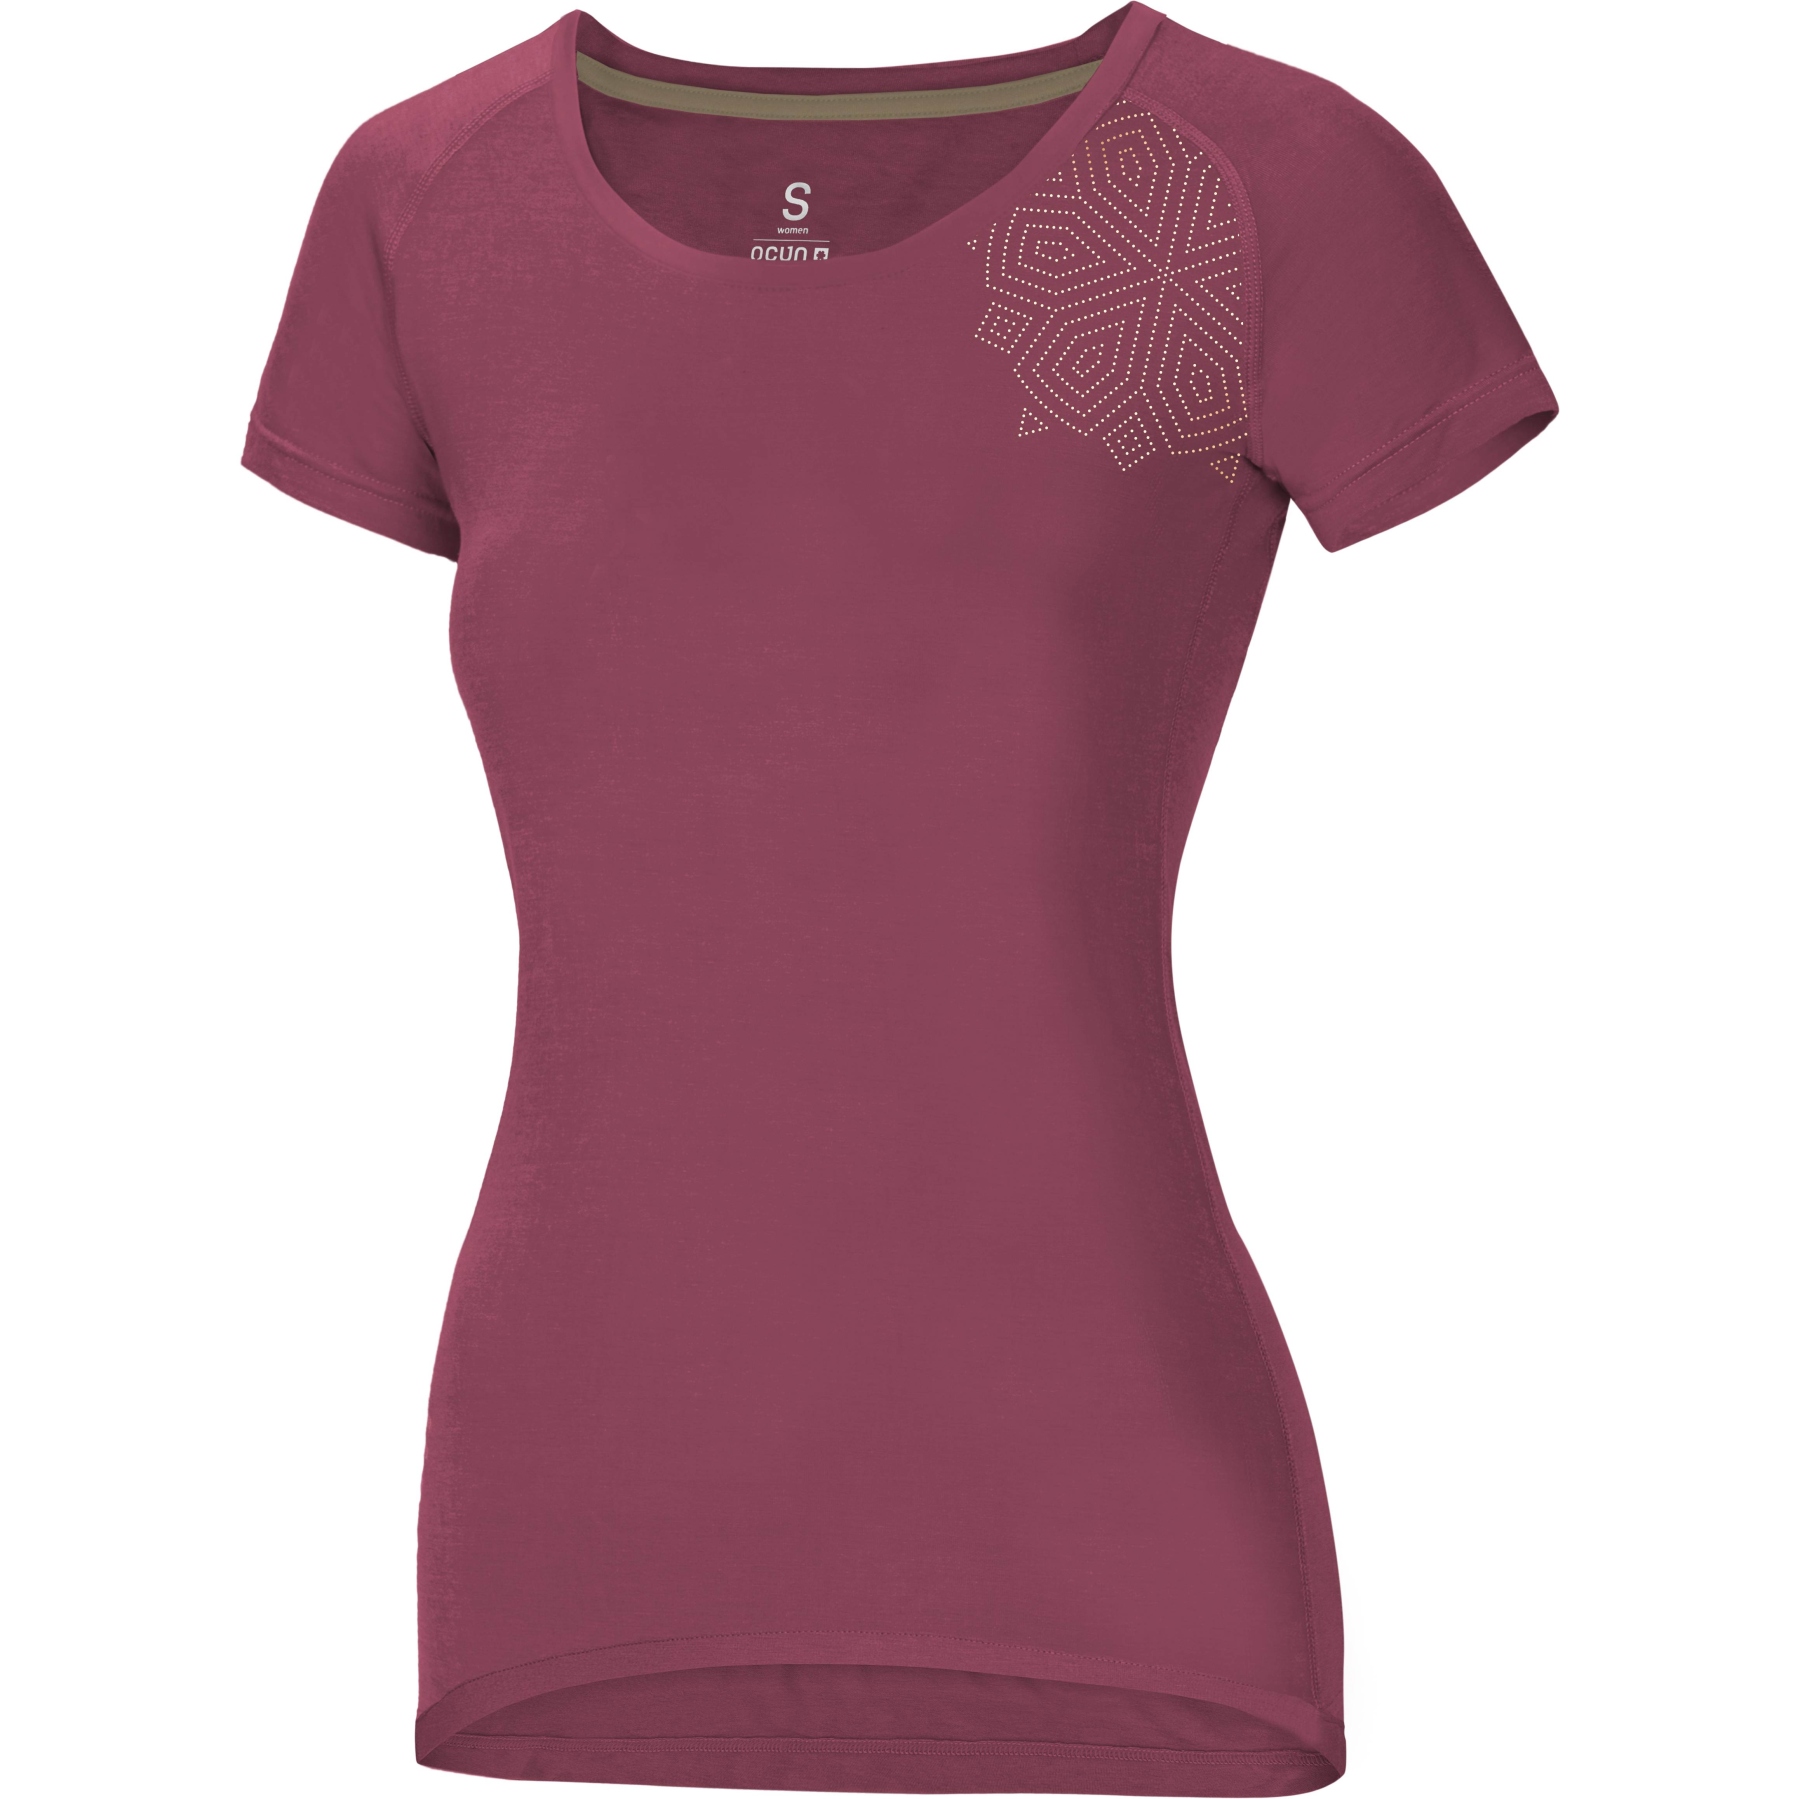 Produktbild von Ocún Raglan T Damen T-Shirt - mandala baroque rose